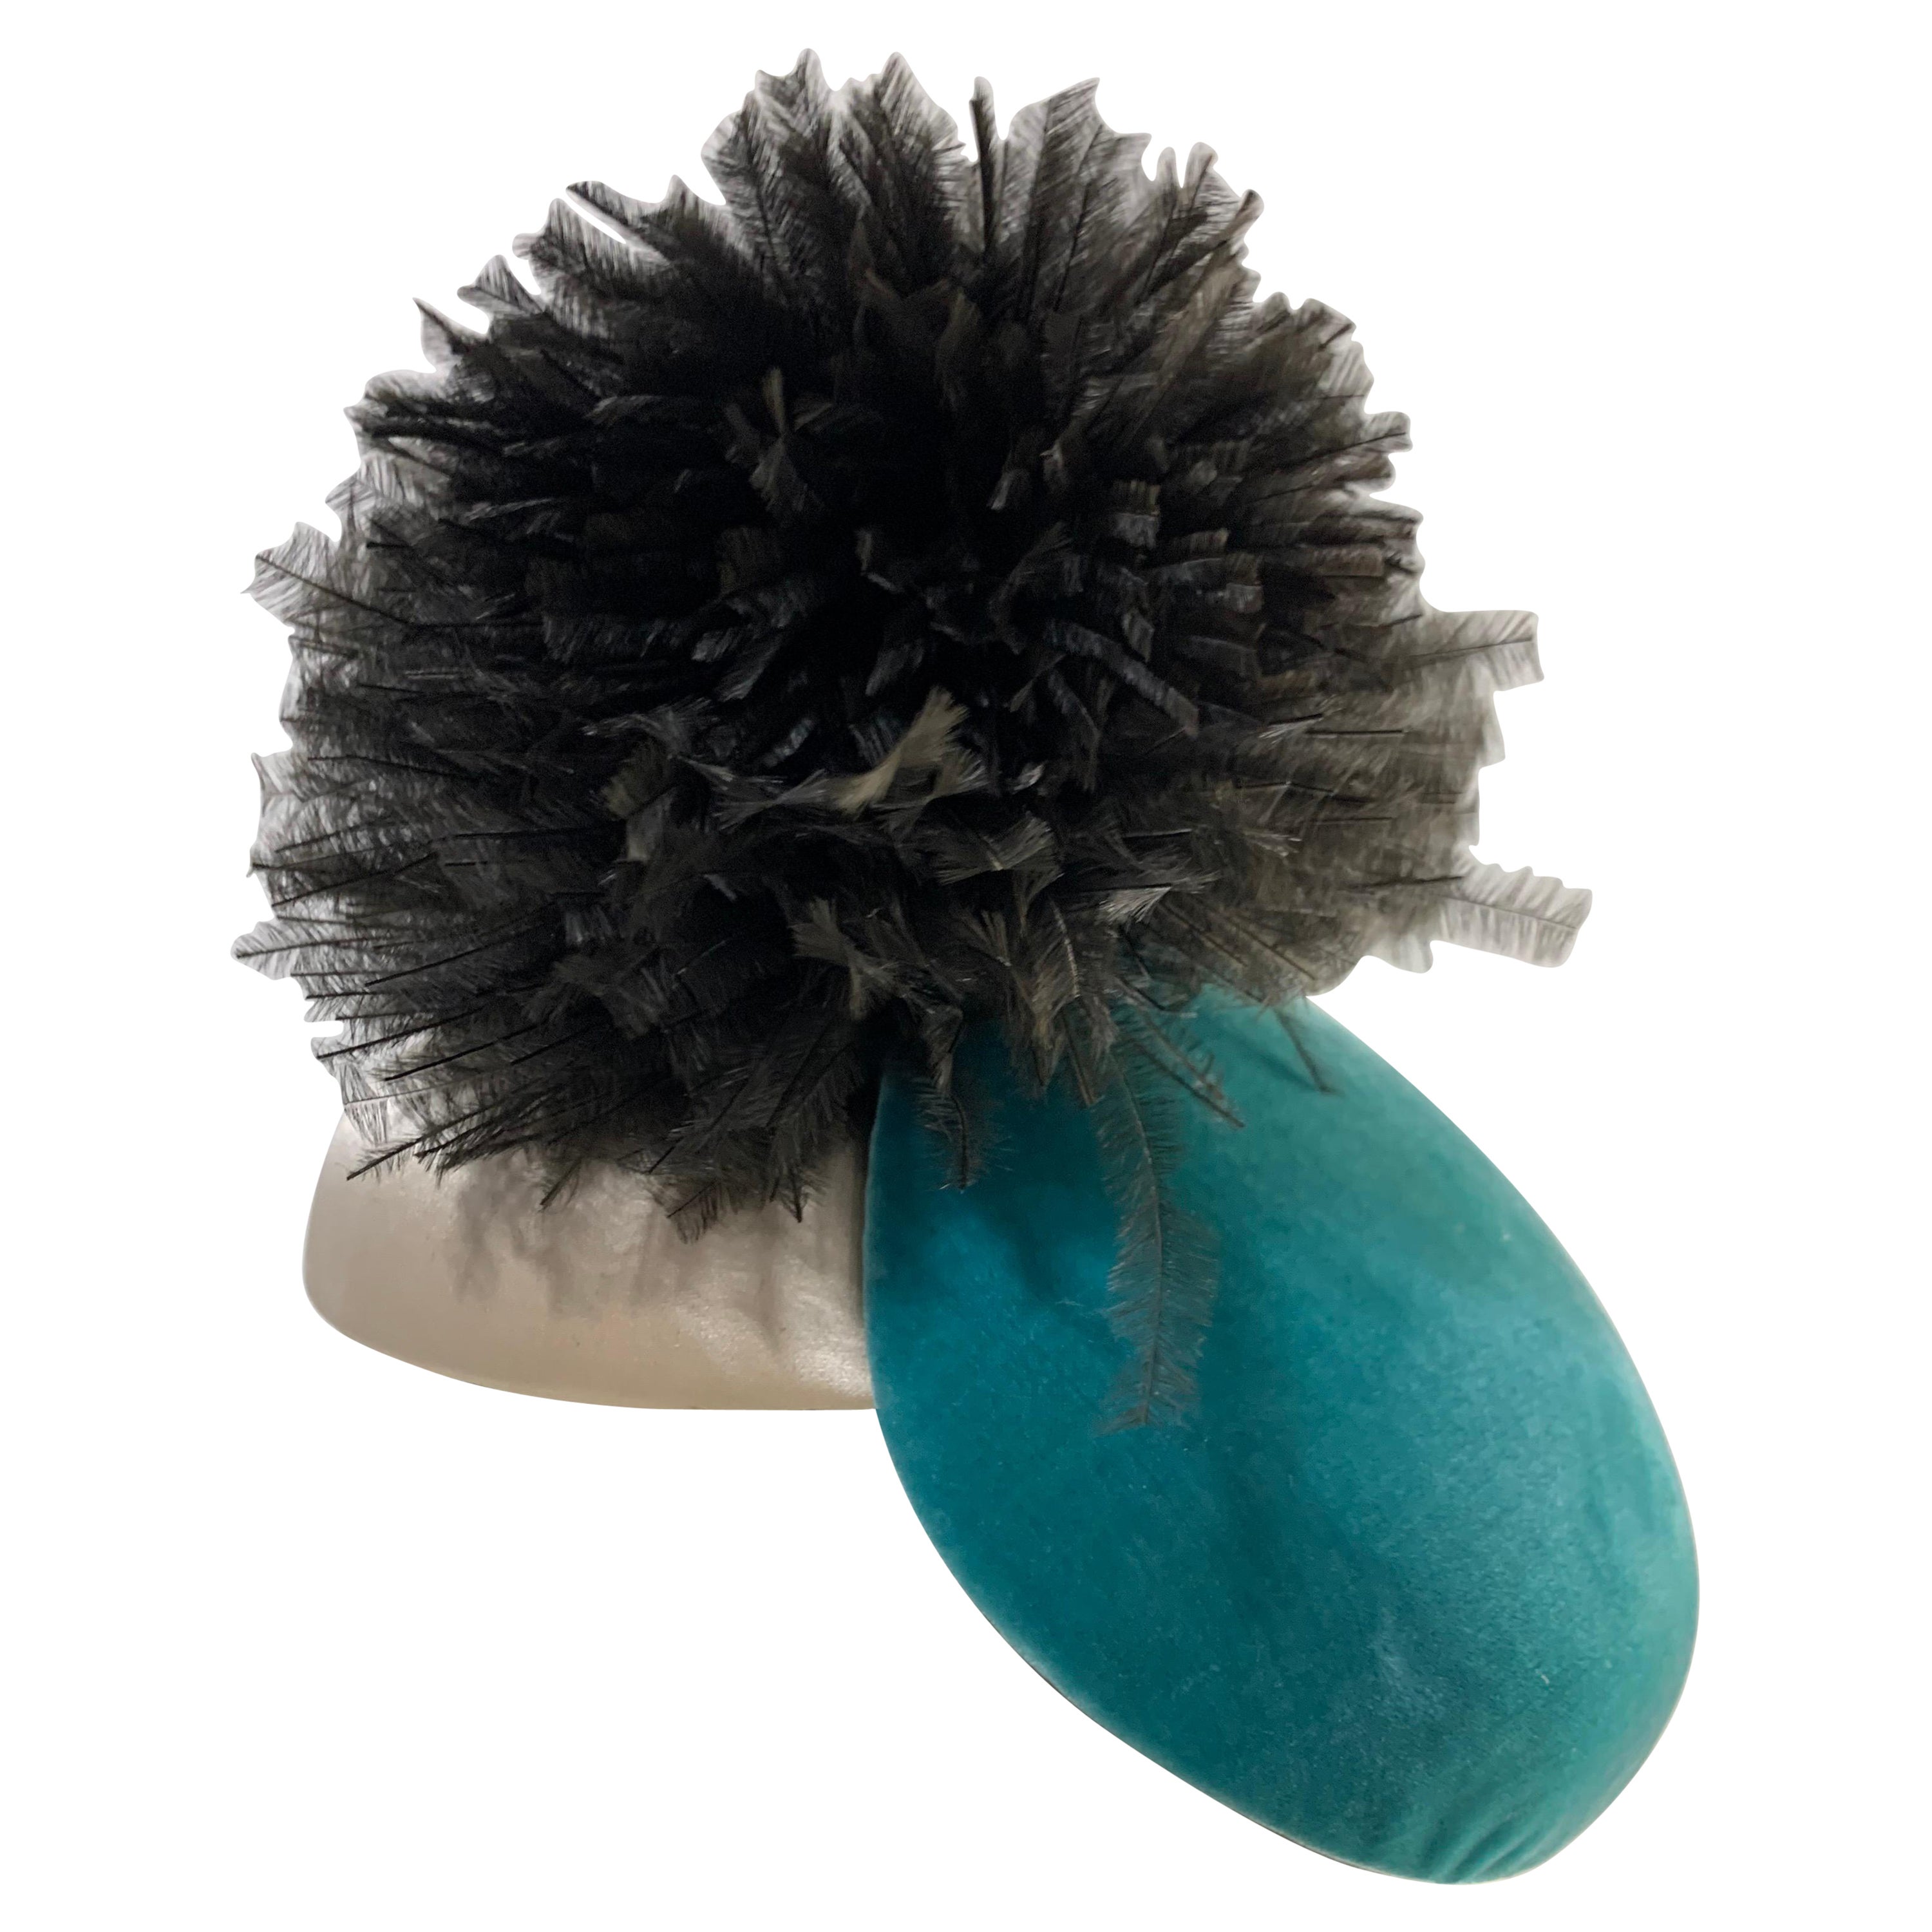 Bonwit Teller - Chapeau de jouet d'avant-garde des années 1950 en turquoise et ivoire avec pouf noir  en vente